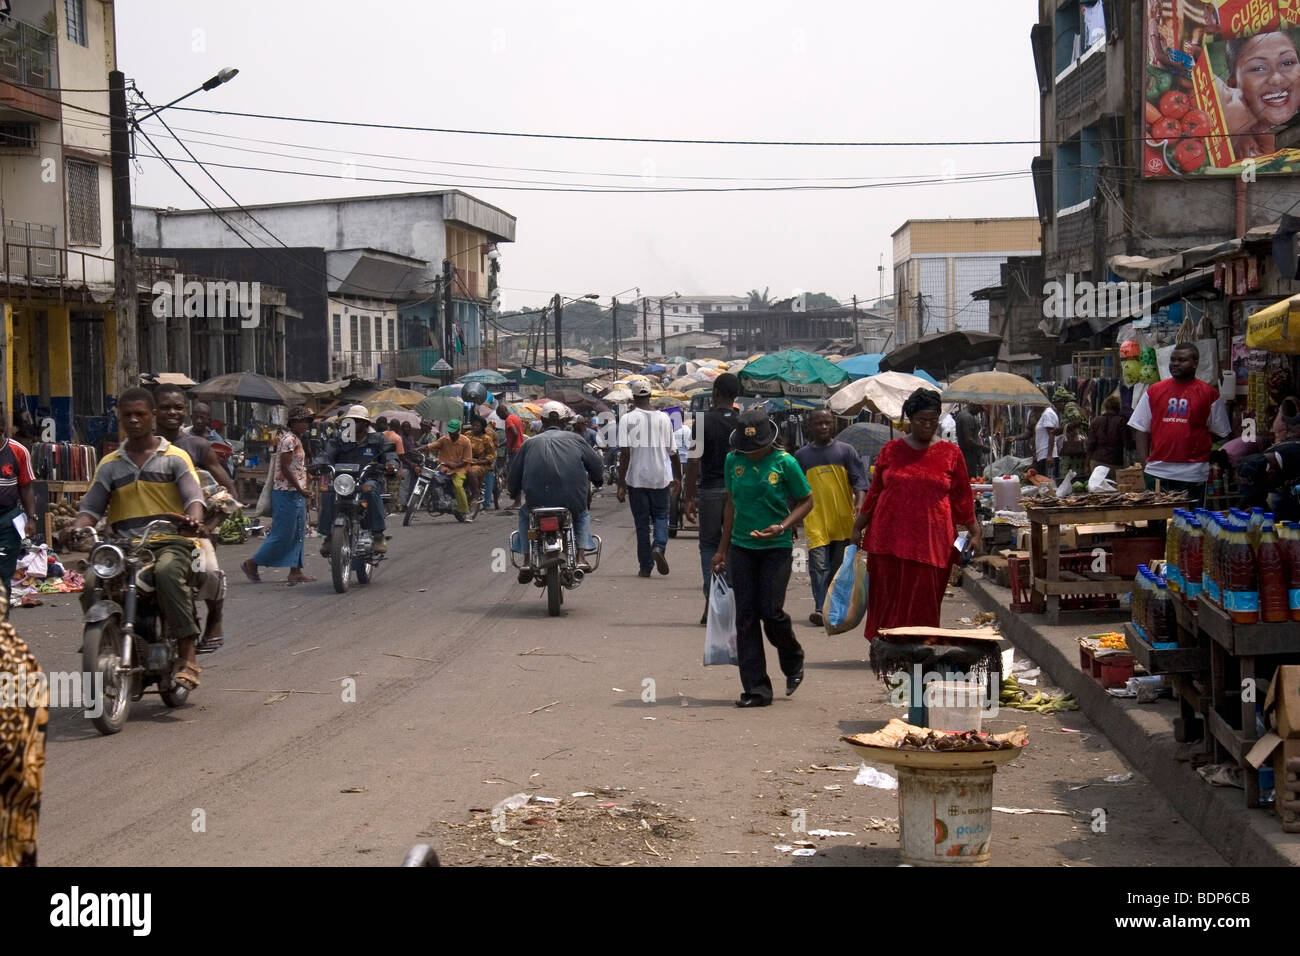 Marché de rue dans quartier pauvre de Grand Moulin Douala Cameroun Afrique de l'Ouest Banque D'Images